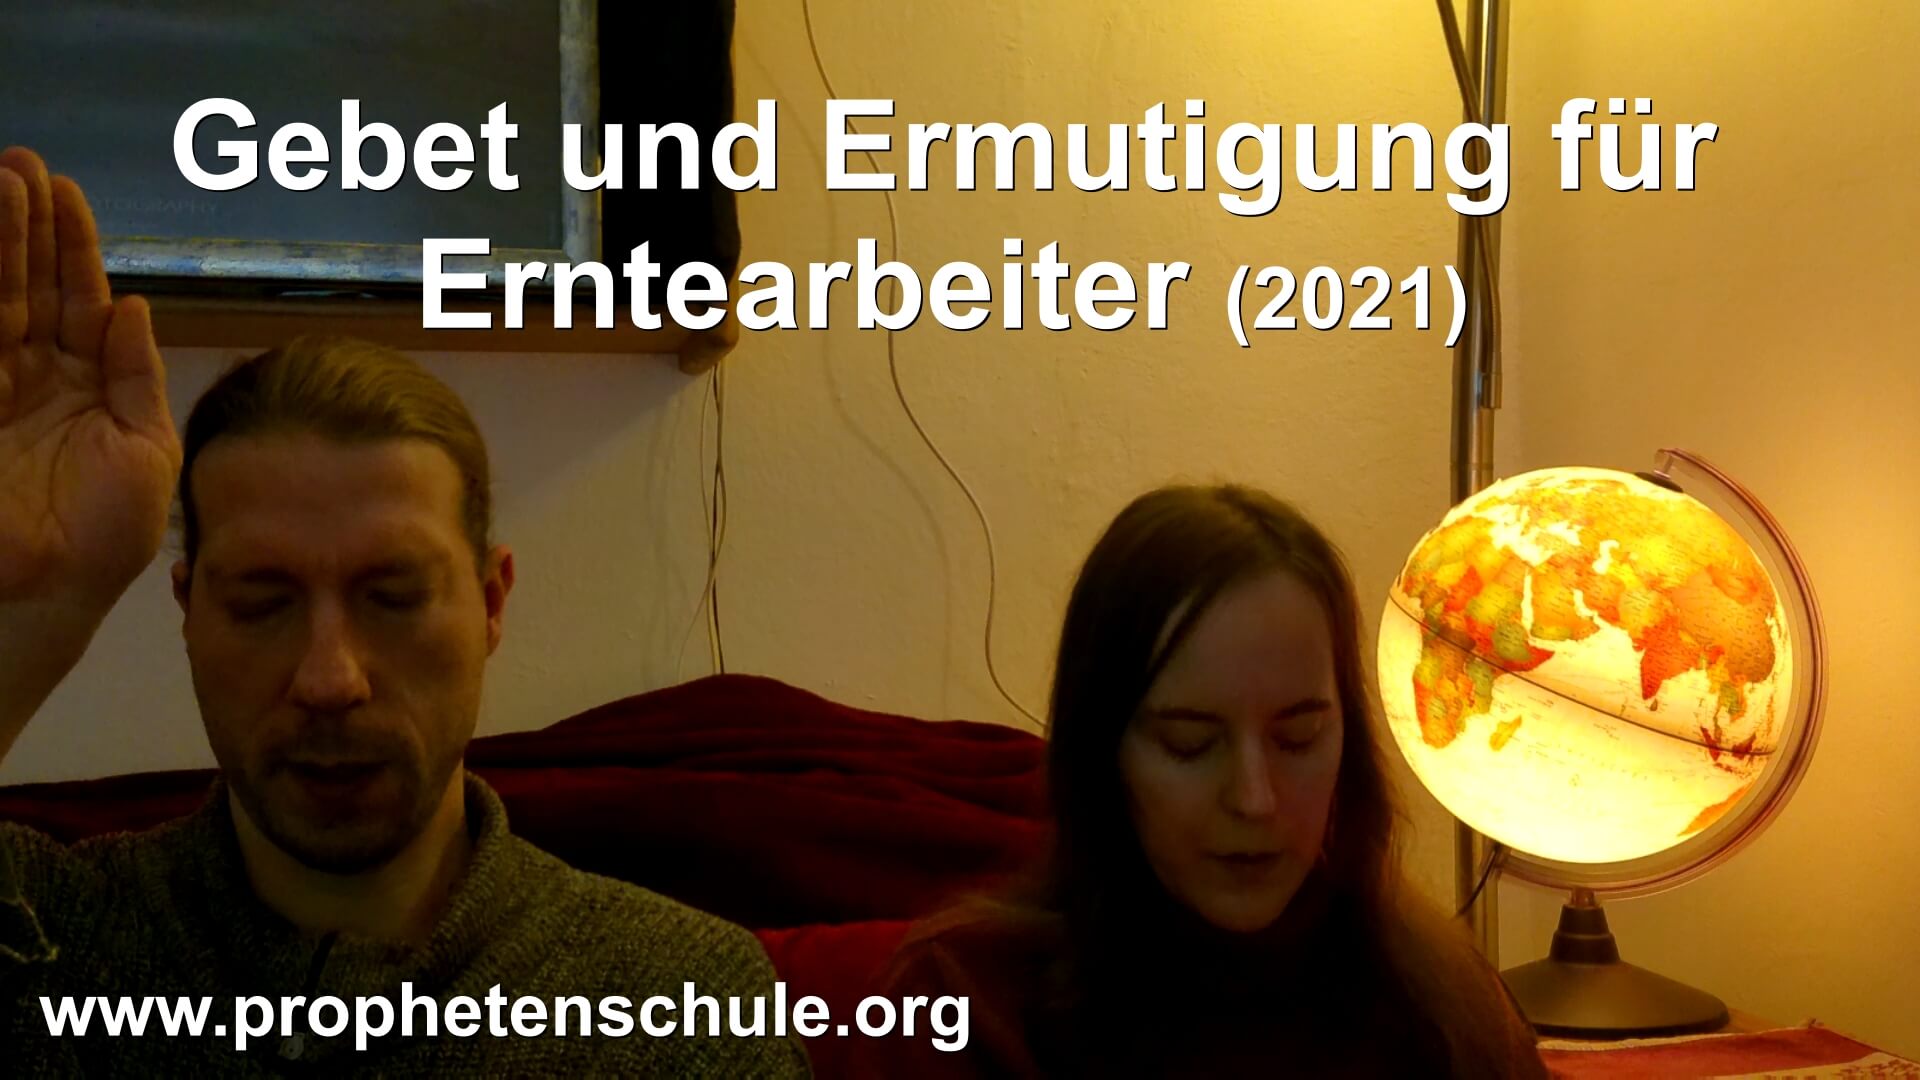 Julia und Tobias beten für Zuschauer im Video. Textaufschrift - Gebet und Ermutigung für Erntearbeiter (2021)